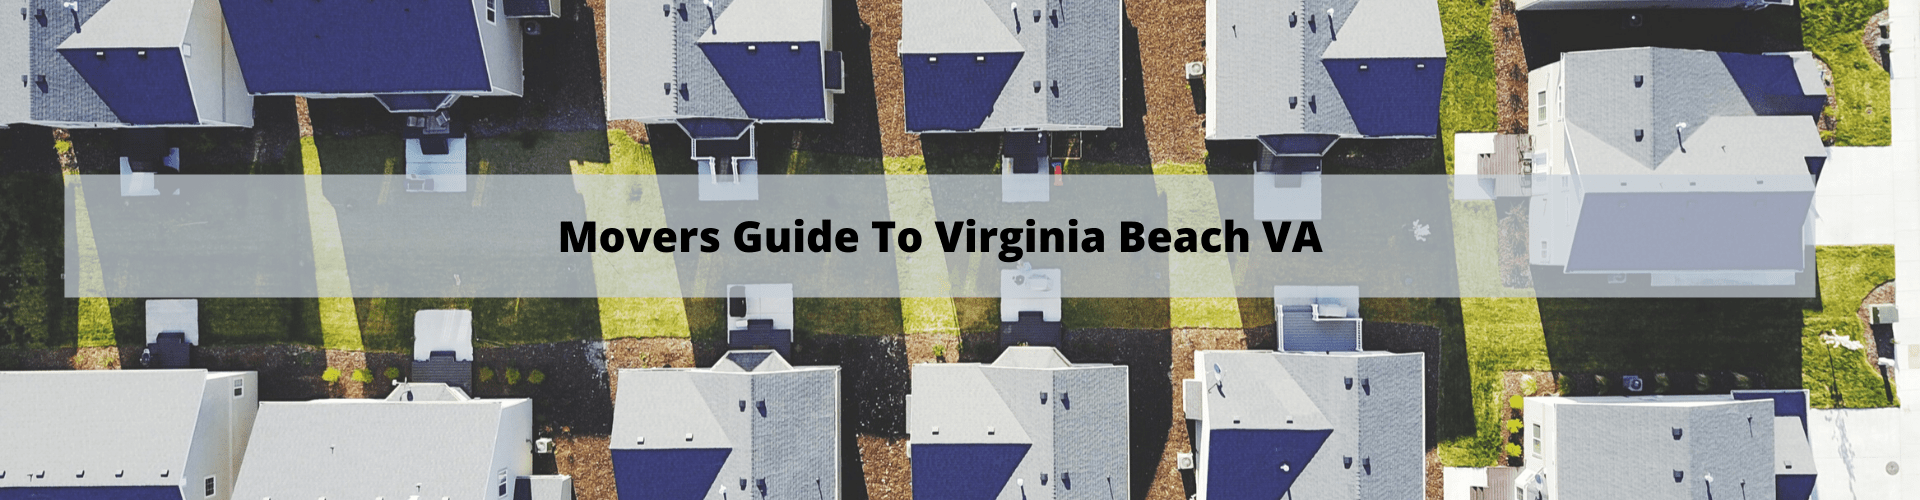 Mover's Guide to Virginia Beach VA